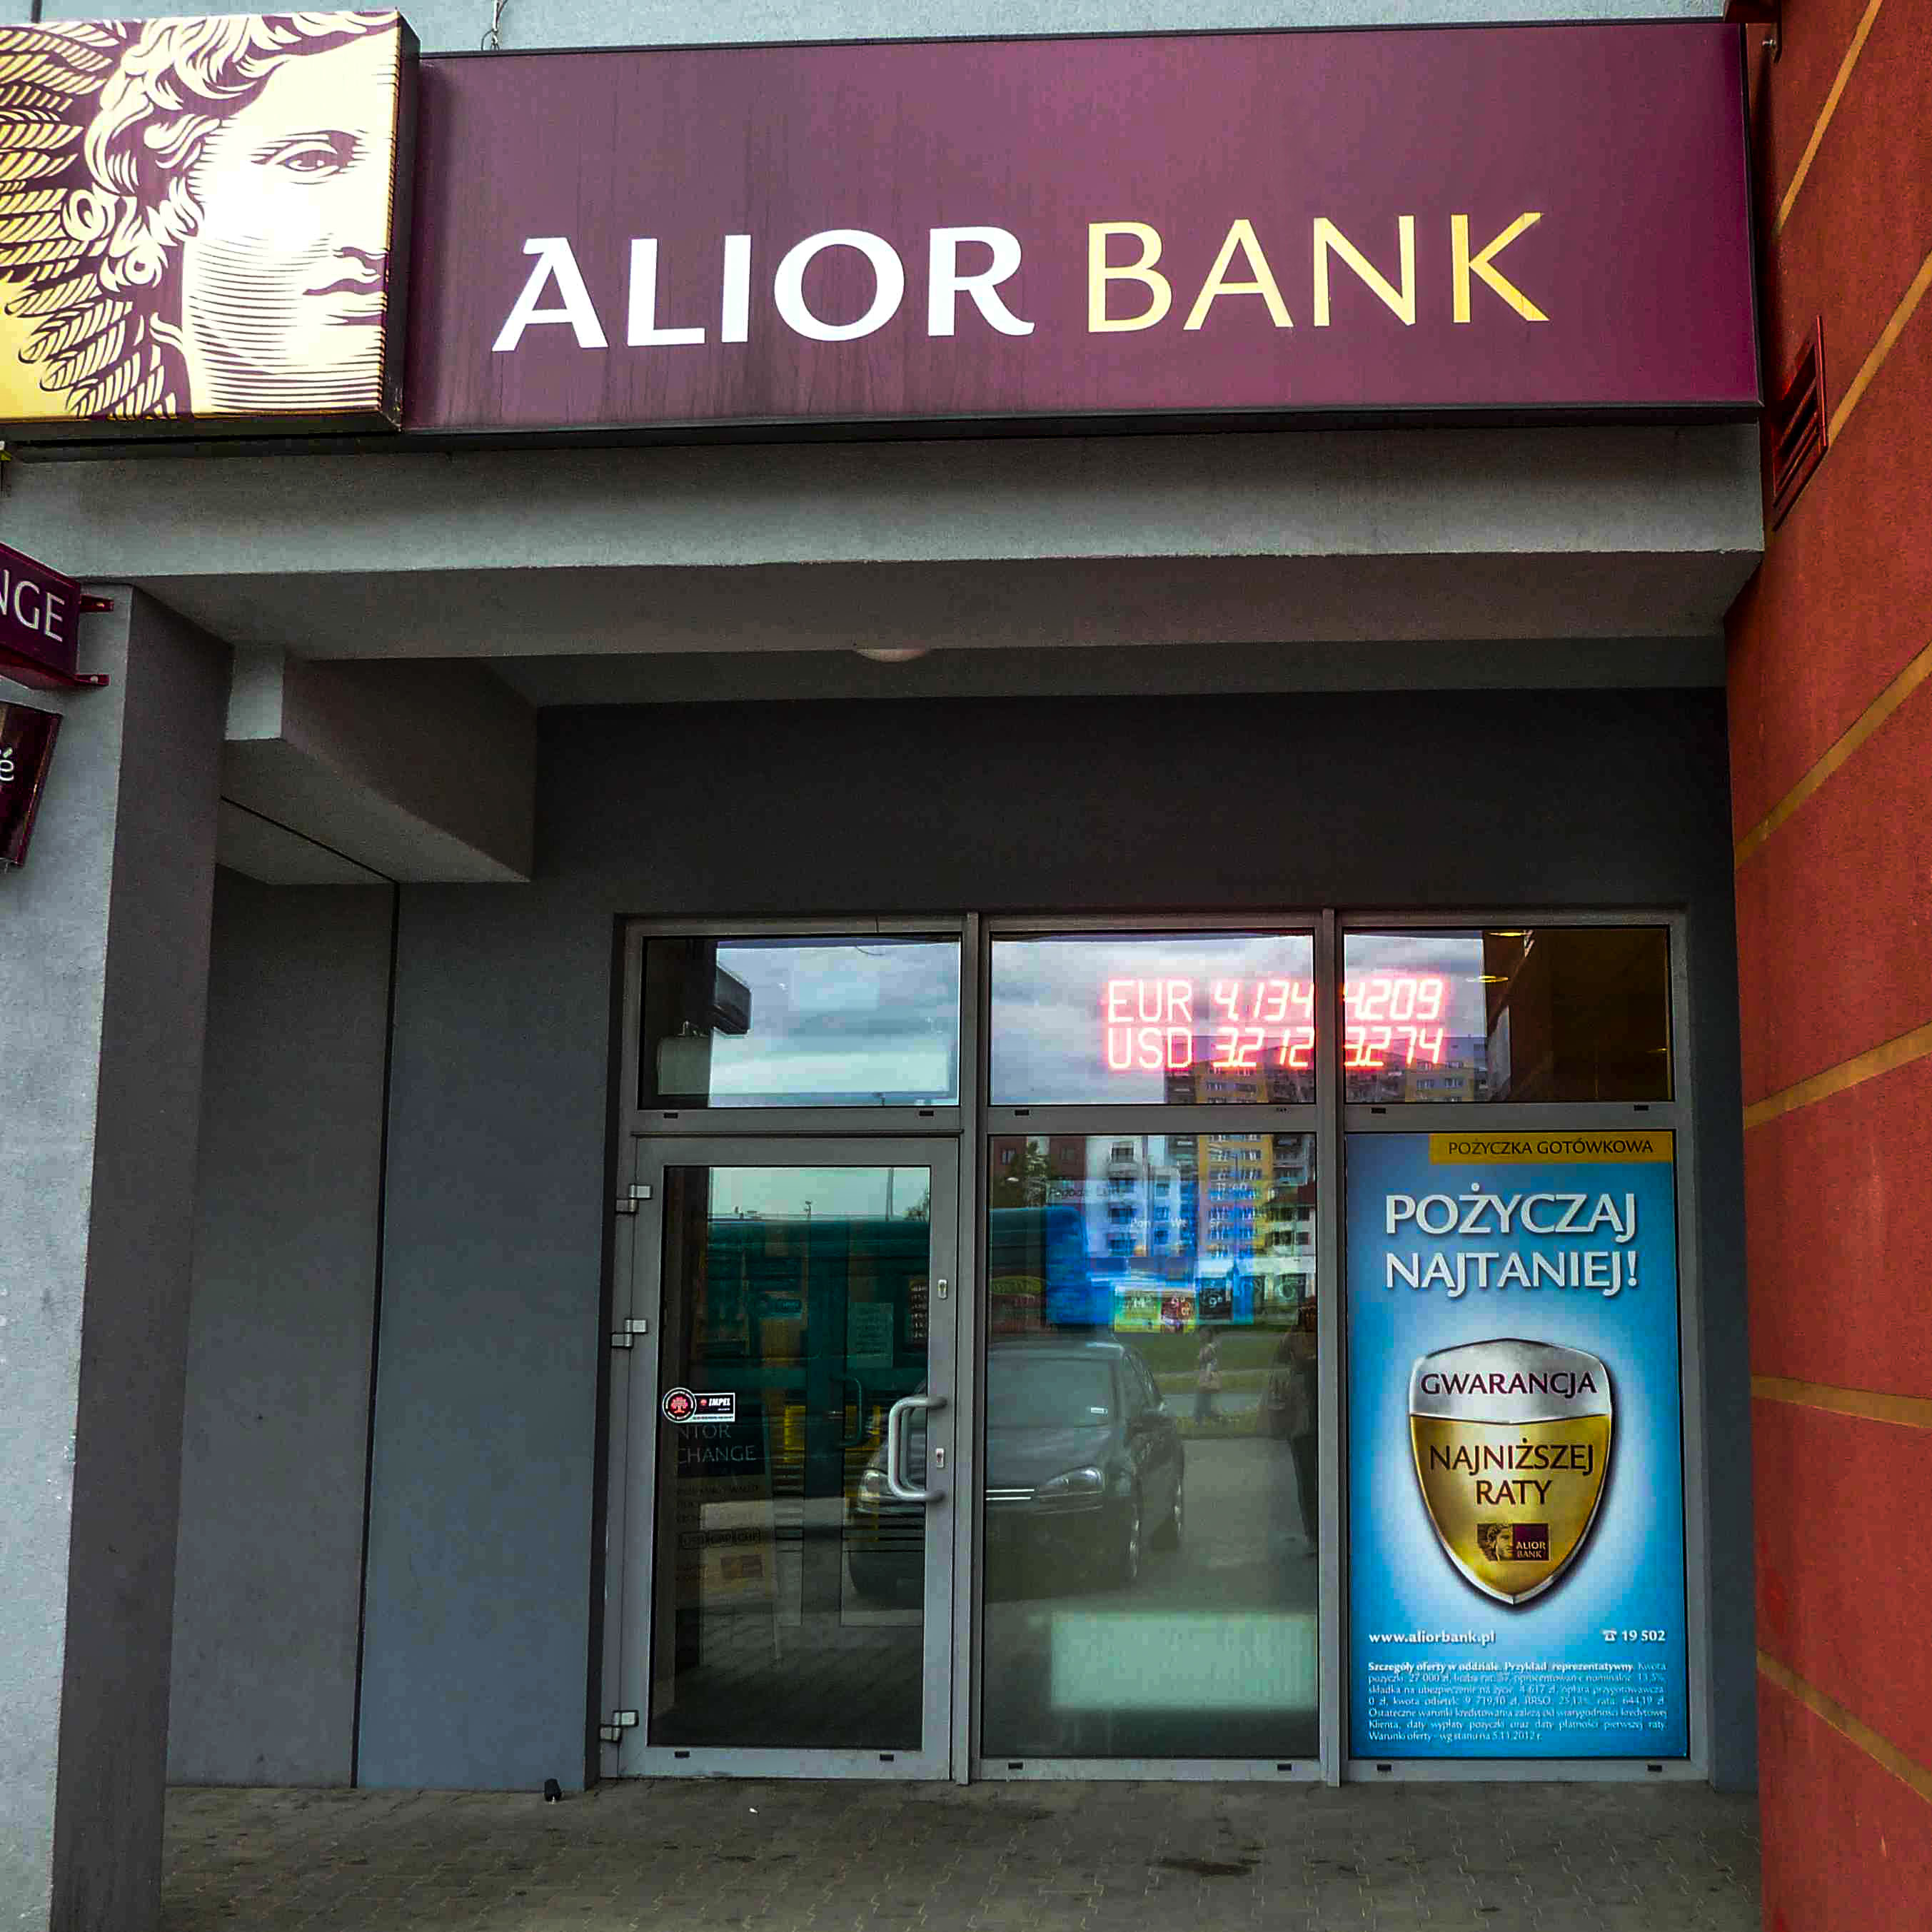 ALIOR BANK